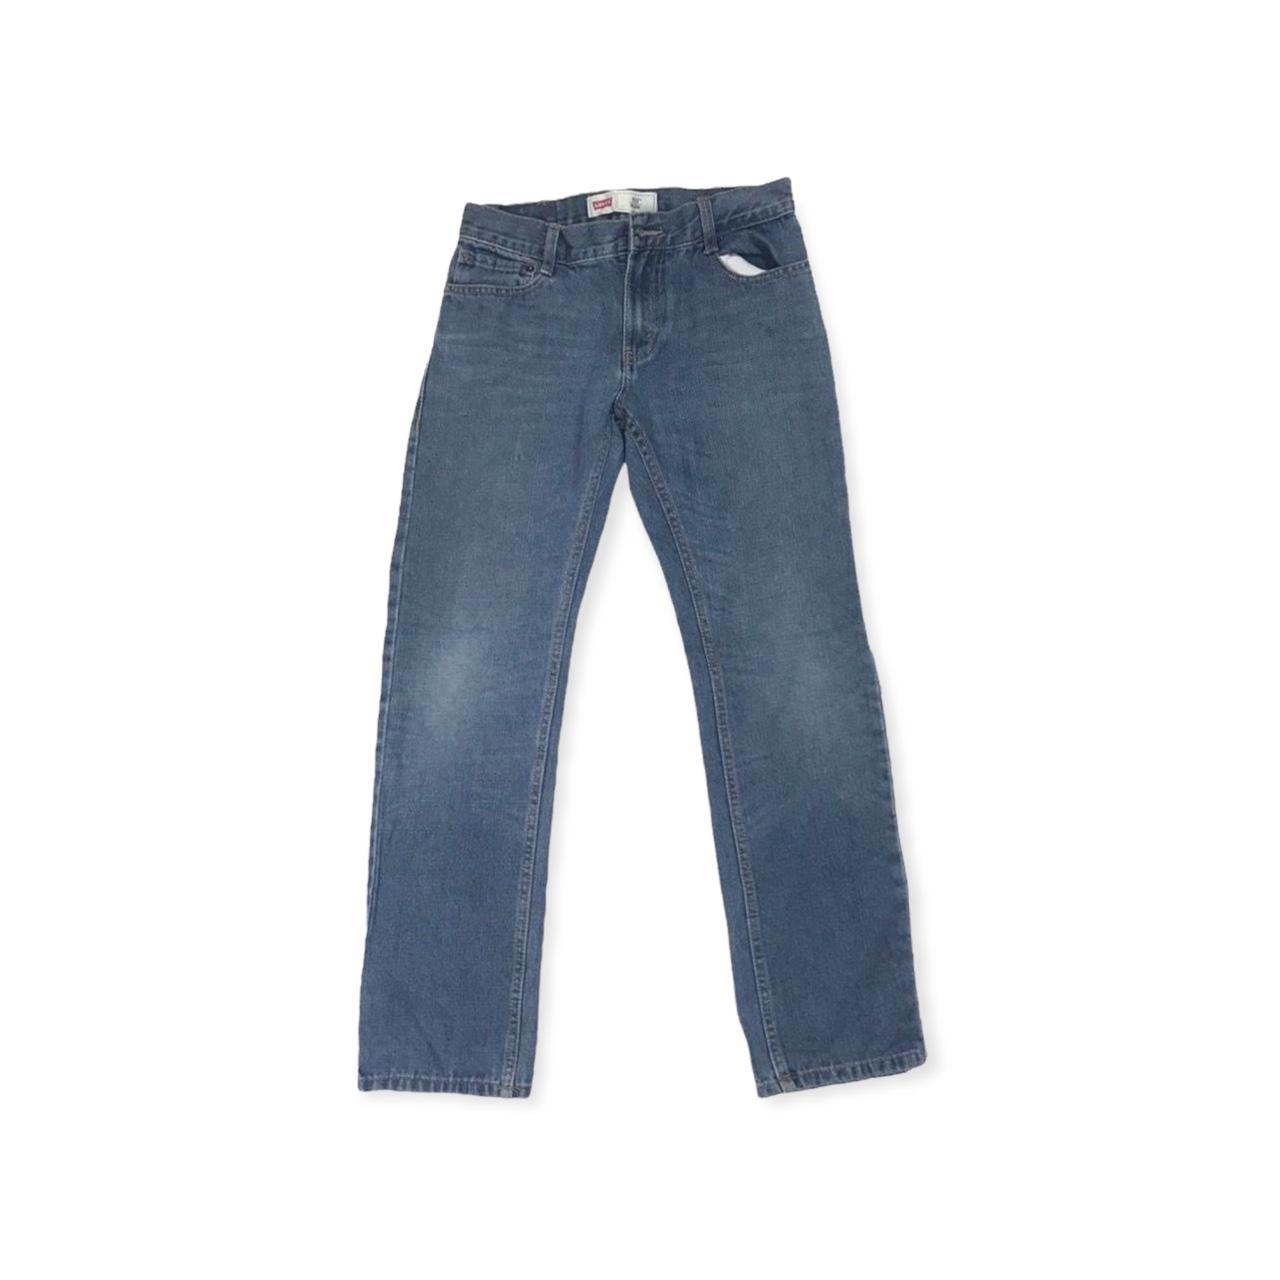 Great Levi's 511 slim cut ladies jeans Condition:... - Depop